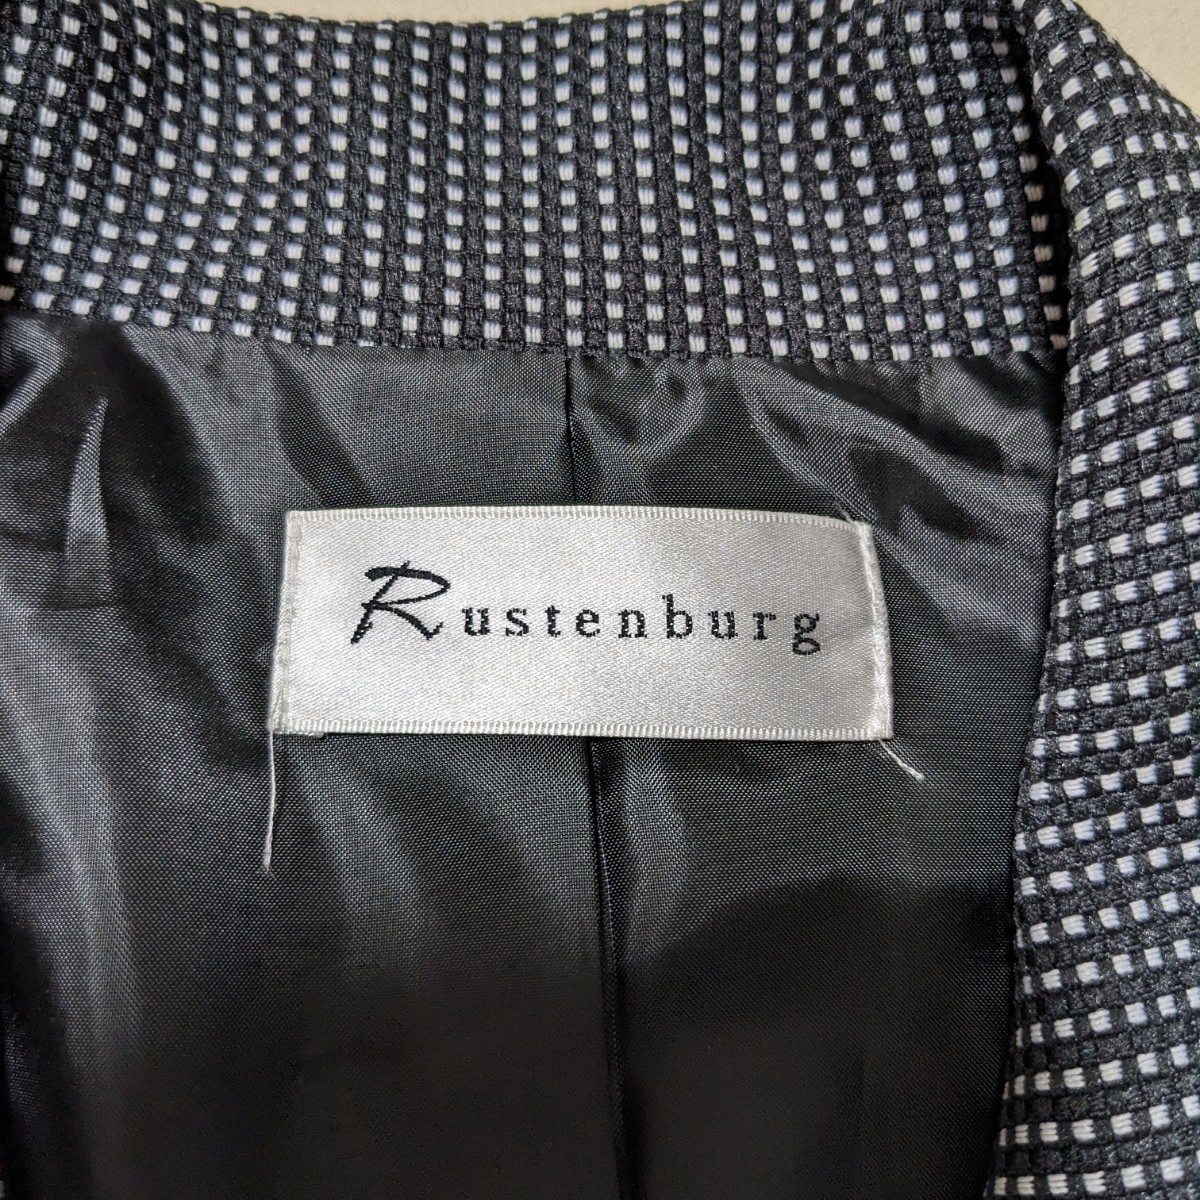 +FZ169 Rustenburg ラステンバーグ フォーマル レディース 13号 13AR セレモニー スーツ 黒 ドット 格子 スカート 入学式 卒業式_画像8